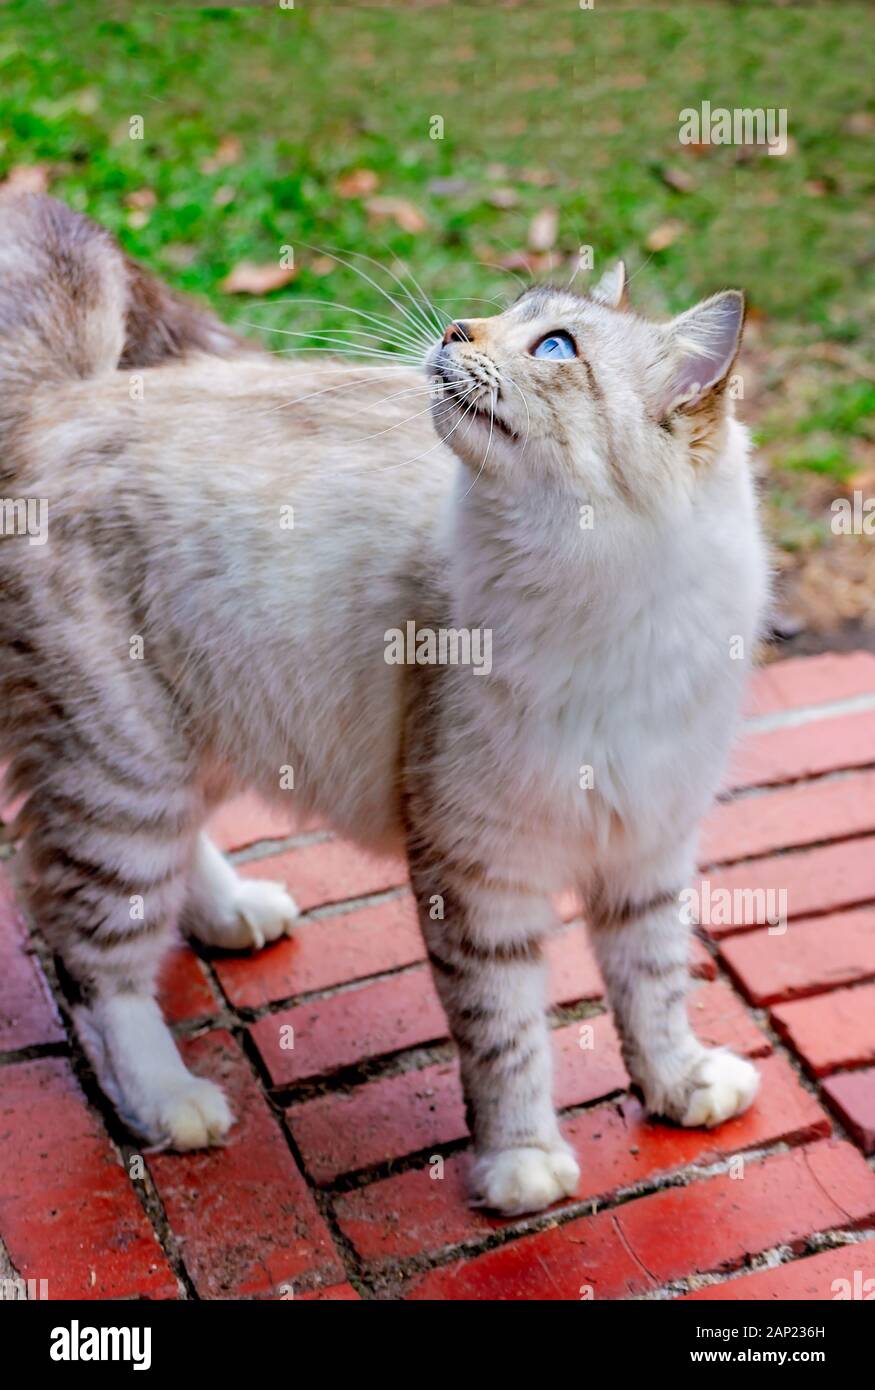 Un poil long silver tabby cat se dresse sur une étape de la brique, à la recherche, 13 janvier 2020, dans l'Alabama, Coden. Banque D'Images